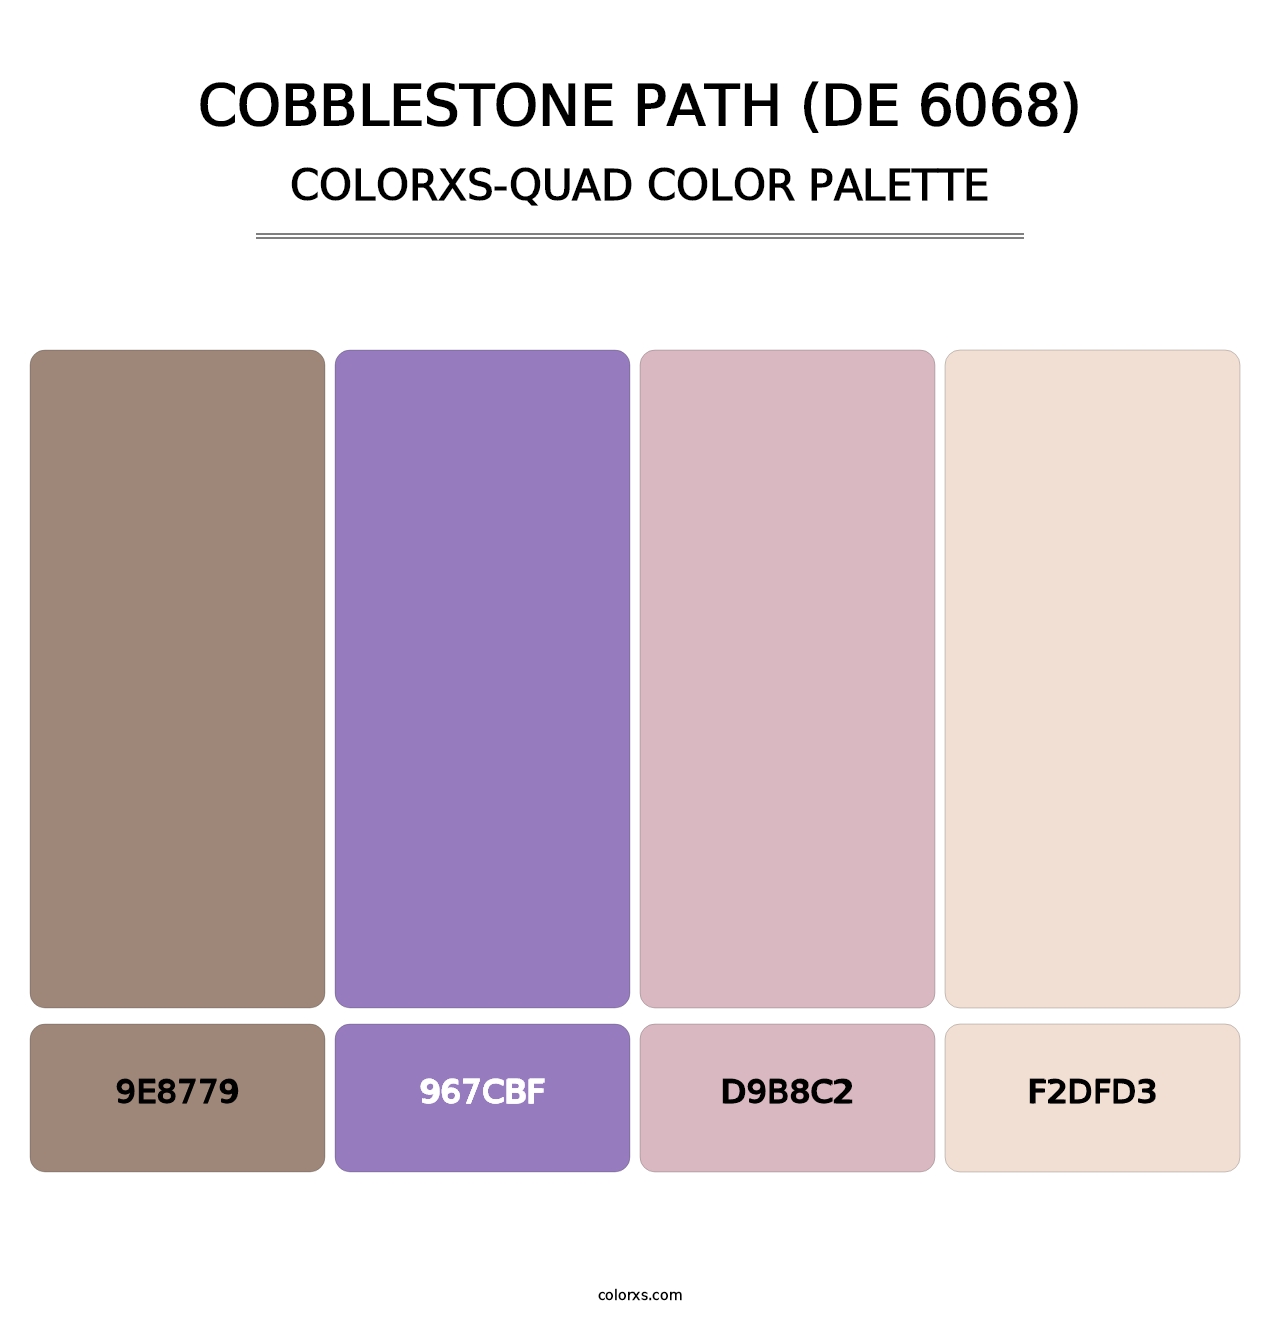 Cobblestone Path (DE 6068) - Colorxs Quad Palette